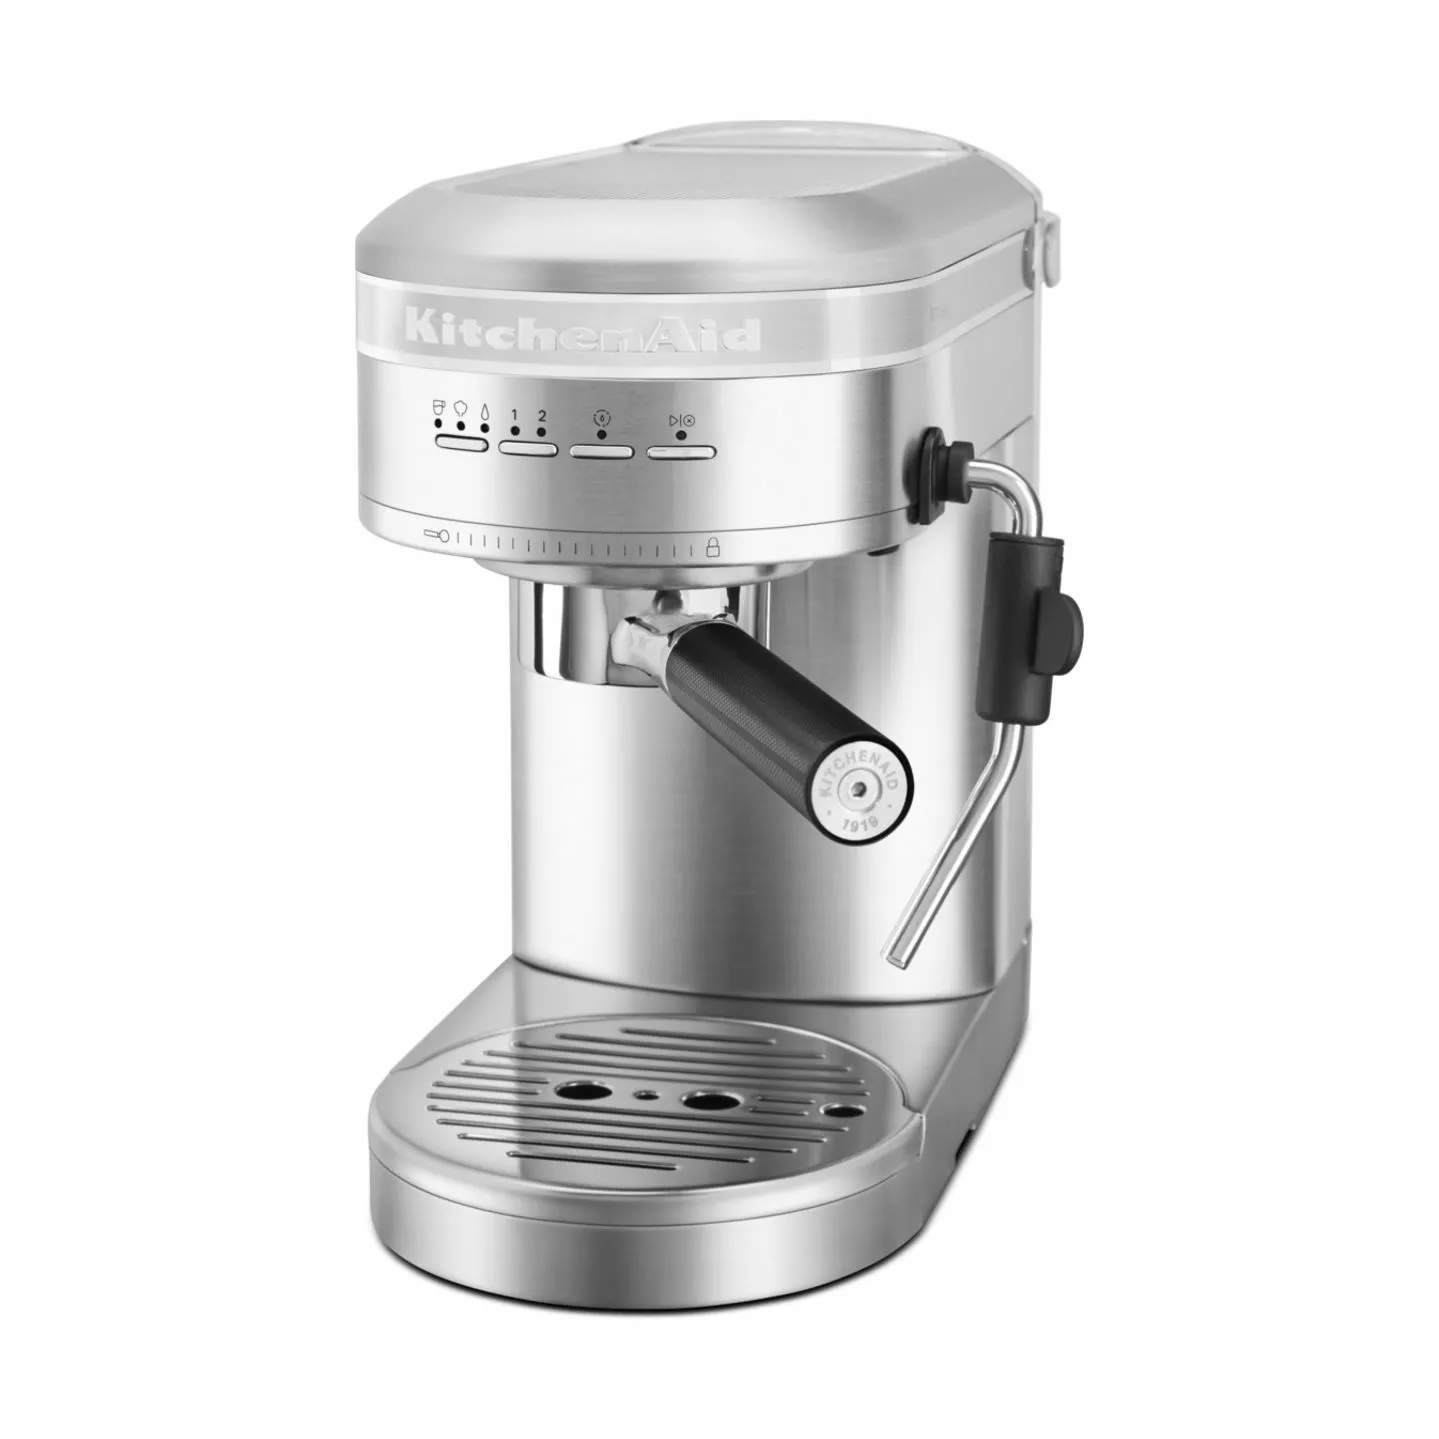 Inhalere landdistrikterne brydning KitchenAid - Espressomaskine - Halvautomatisk - Stainless steel | Imerco